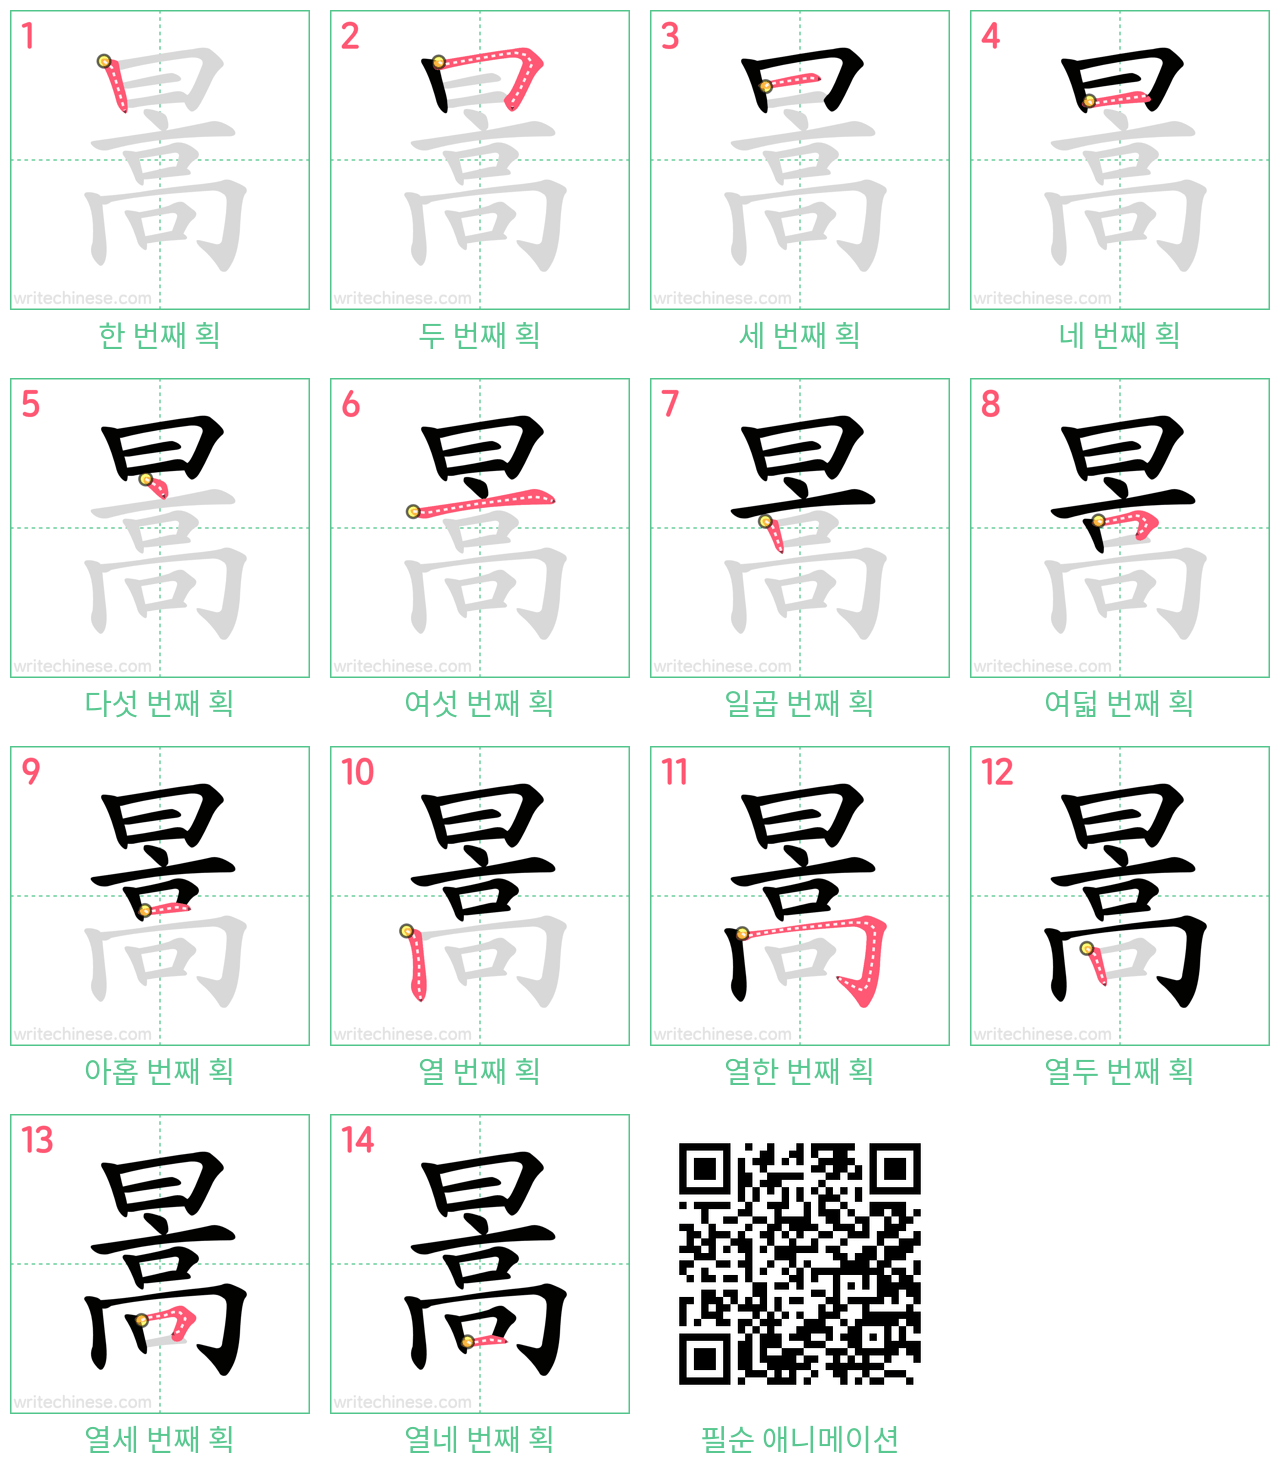 暠 step-by-step stroke order diagrams